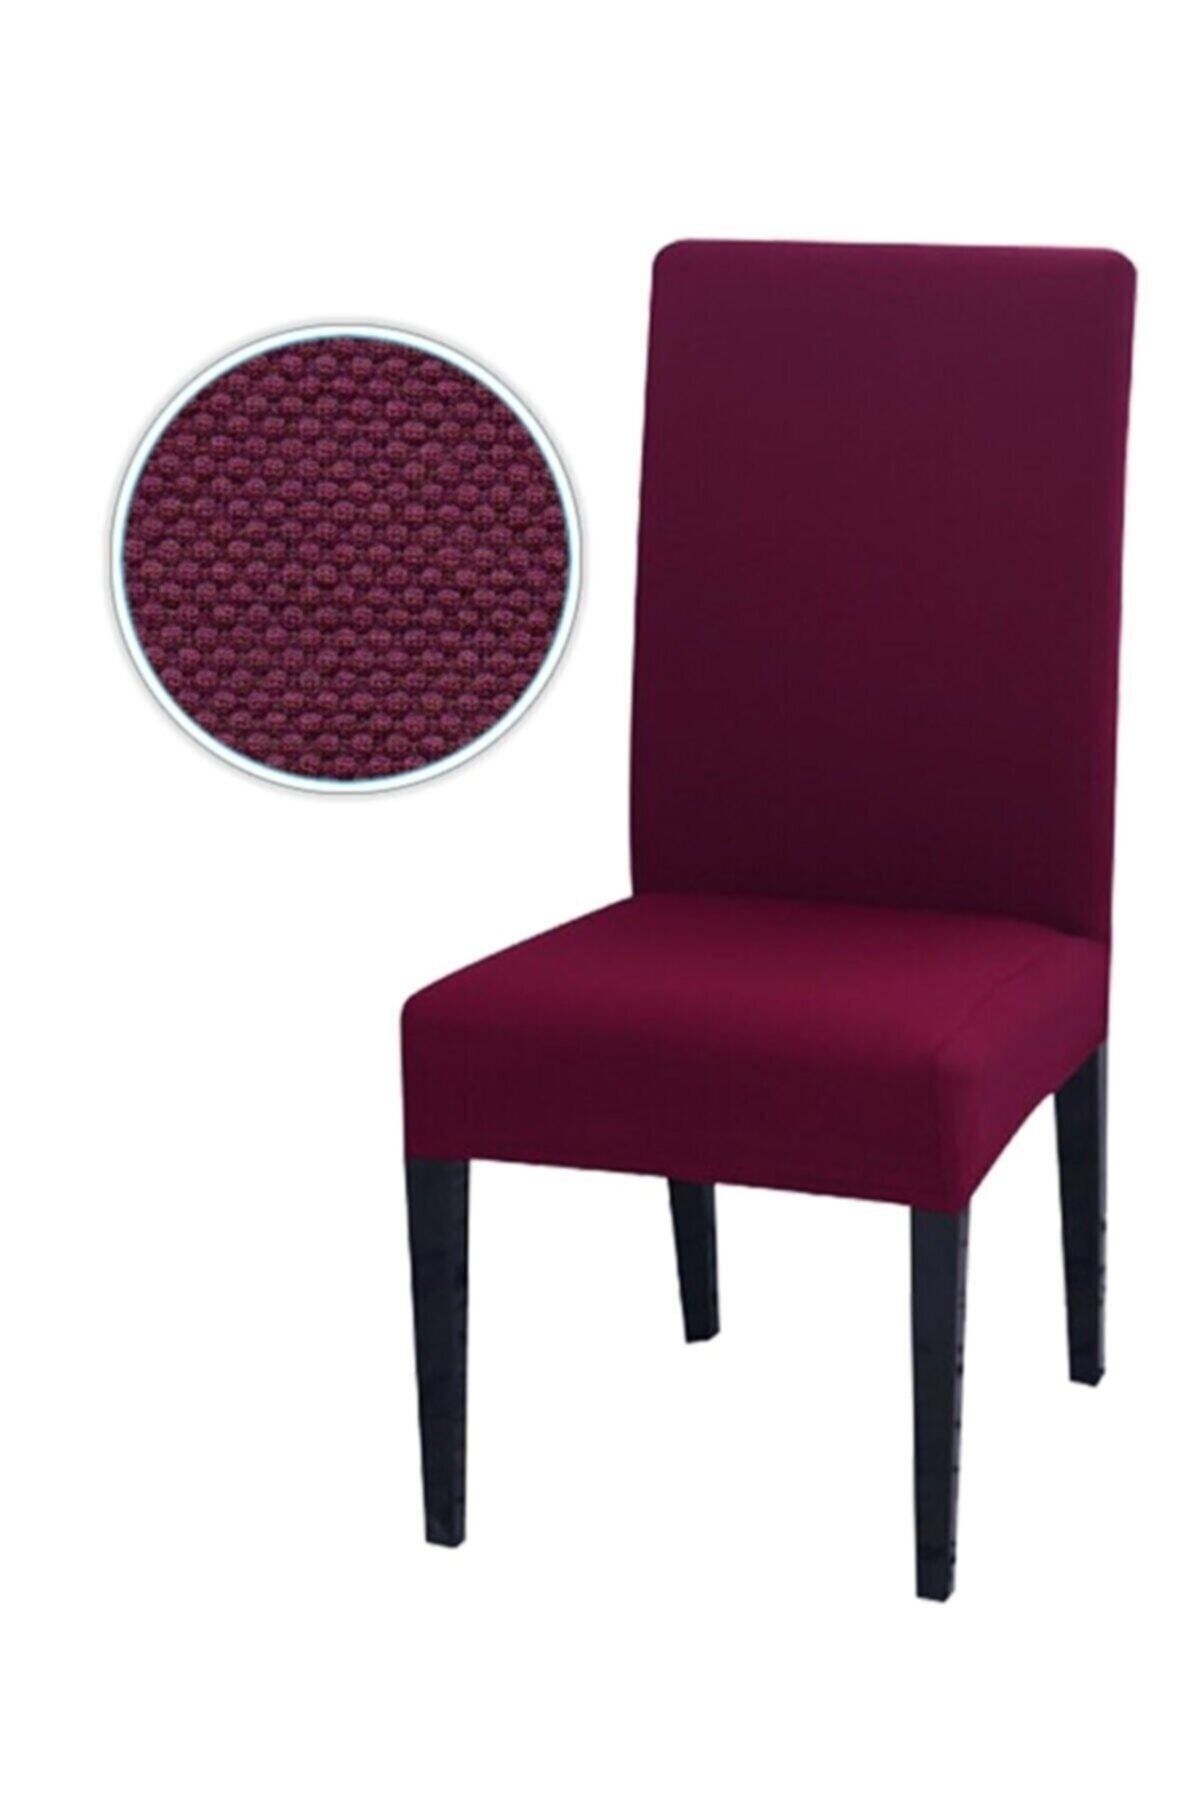 elgeyar Balpeteği Likra Kumaşlı Sandalye Örtüsü , Lastikli Sandalye Kılıfı 1 Adet Bordo Rengi